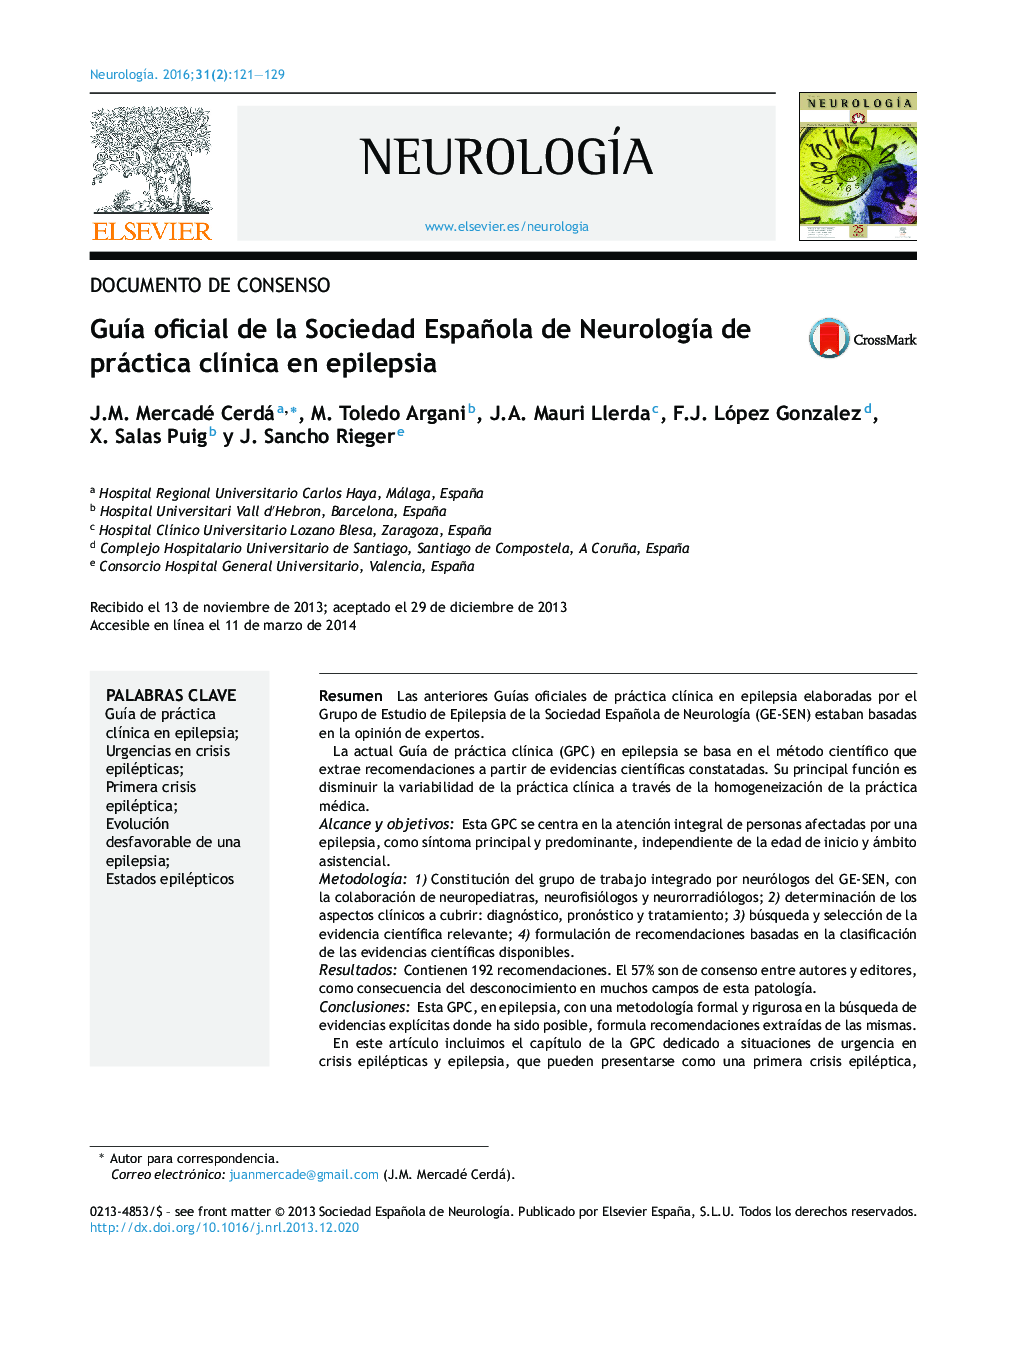 Guía oficial de la Sociedad Española de Neurología de práctica clínica en epilepsia